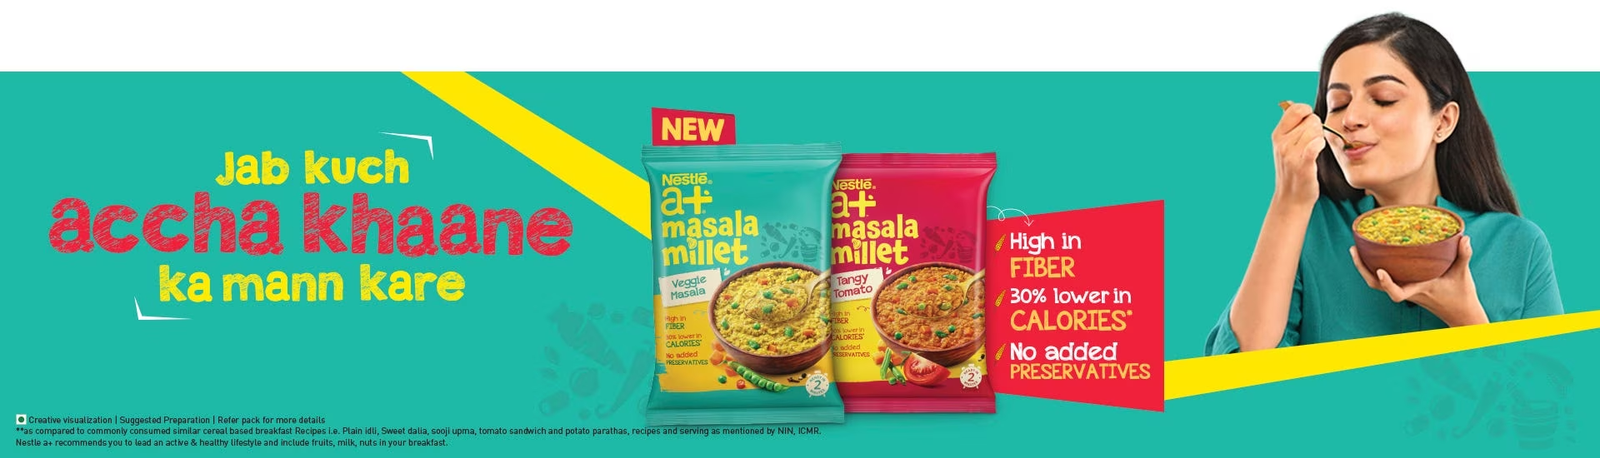 Nestlé India launches Nestlé a+ Masala Millet